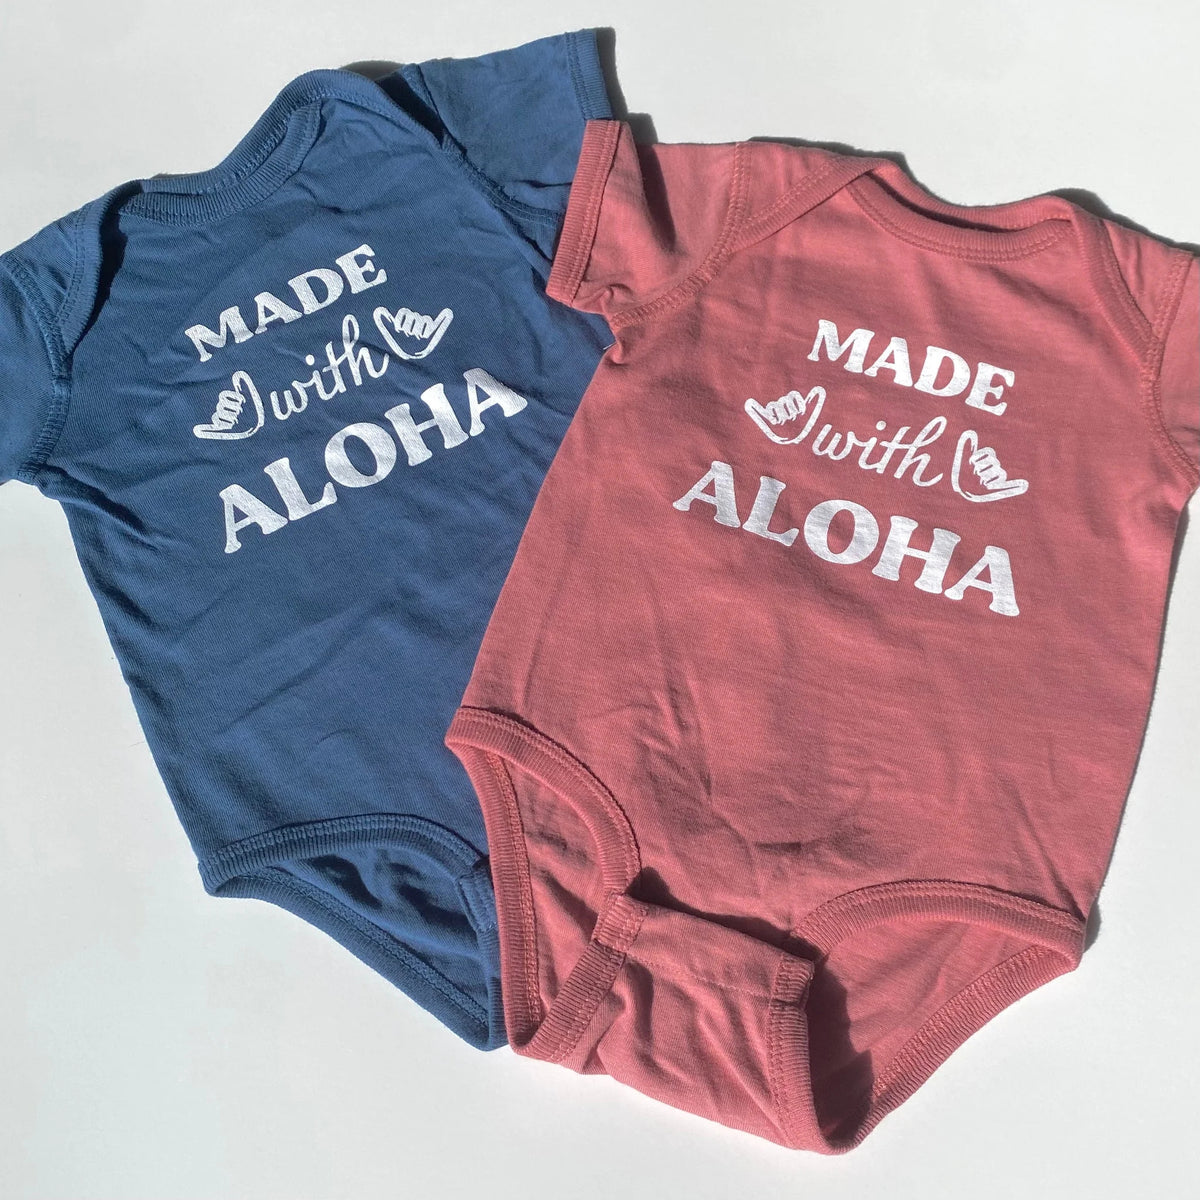 Pop-Up Mākeke - Honolulu Baby Co. - Made With Aloha Baby Onesie - Mauve